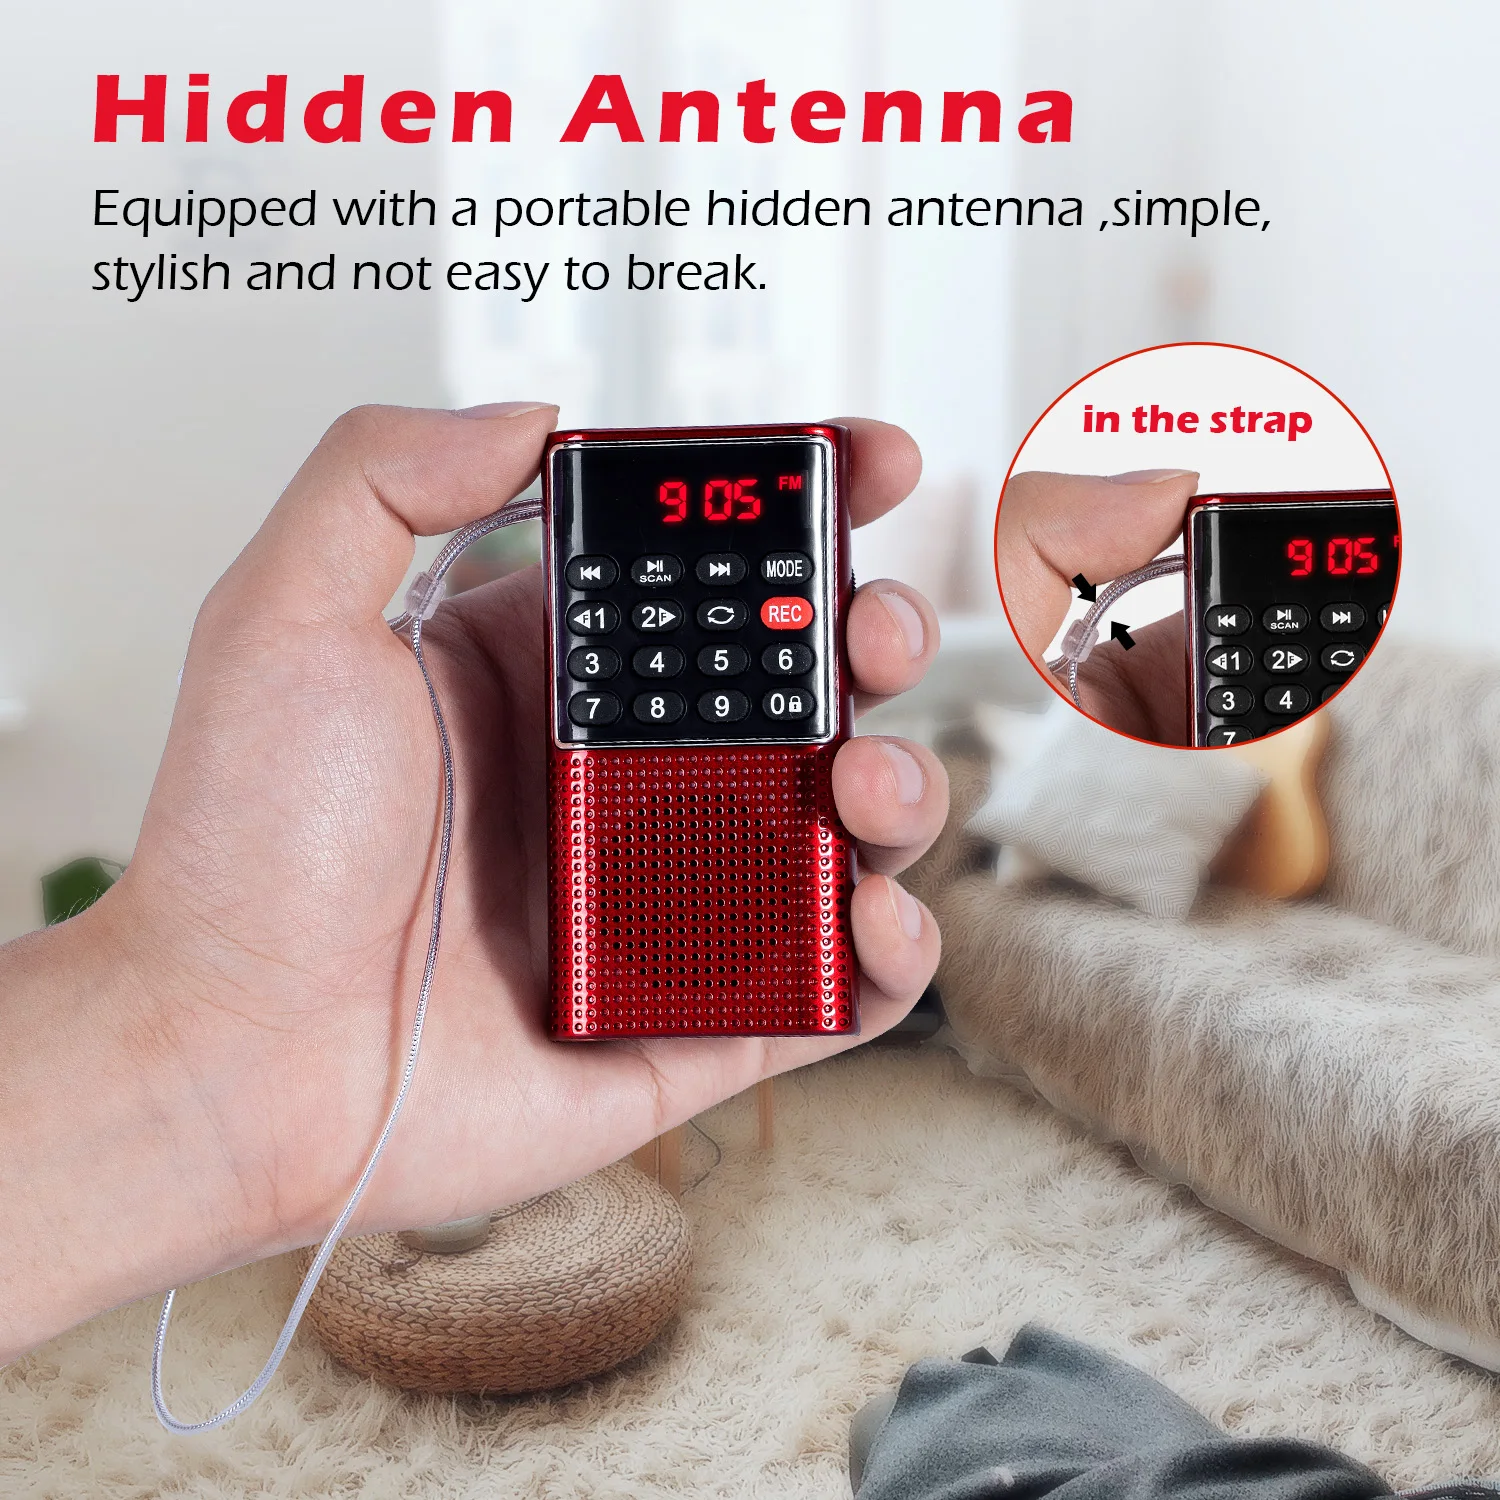 Мини Портативное карманное FM-радио Портативные MP3-плееры Walkman с диктофоном Аккумуляторная батарея для Walkman Go Hiking - 4